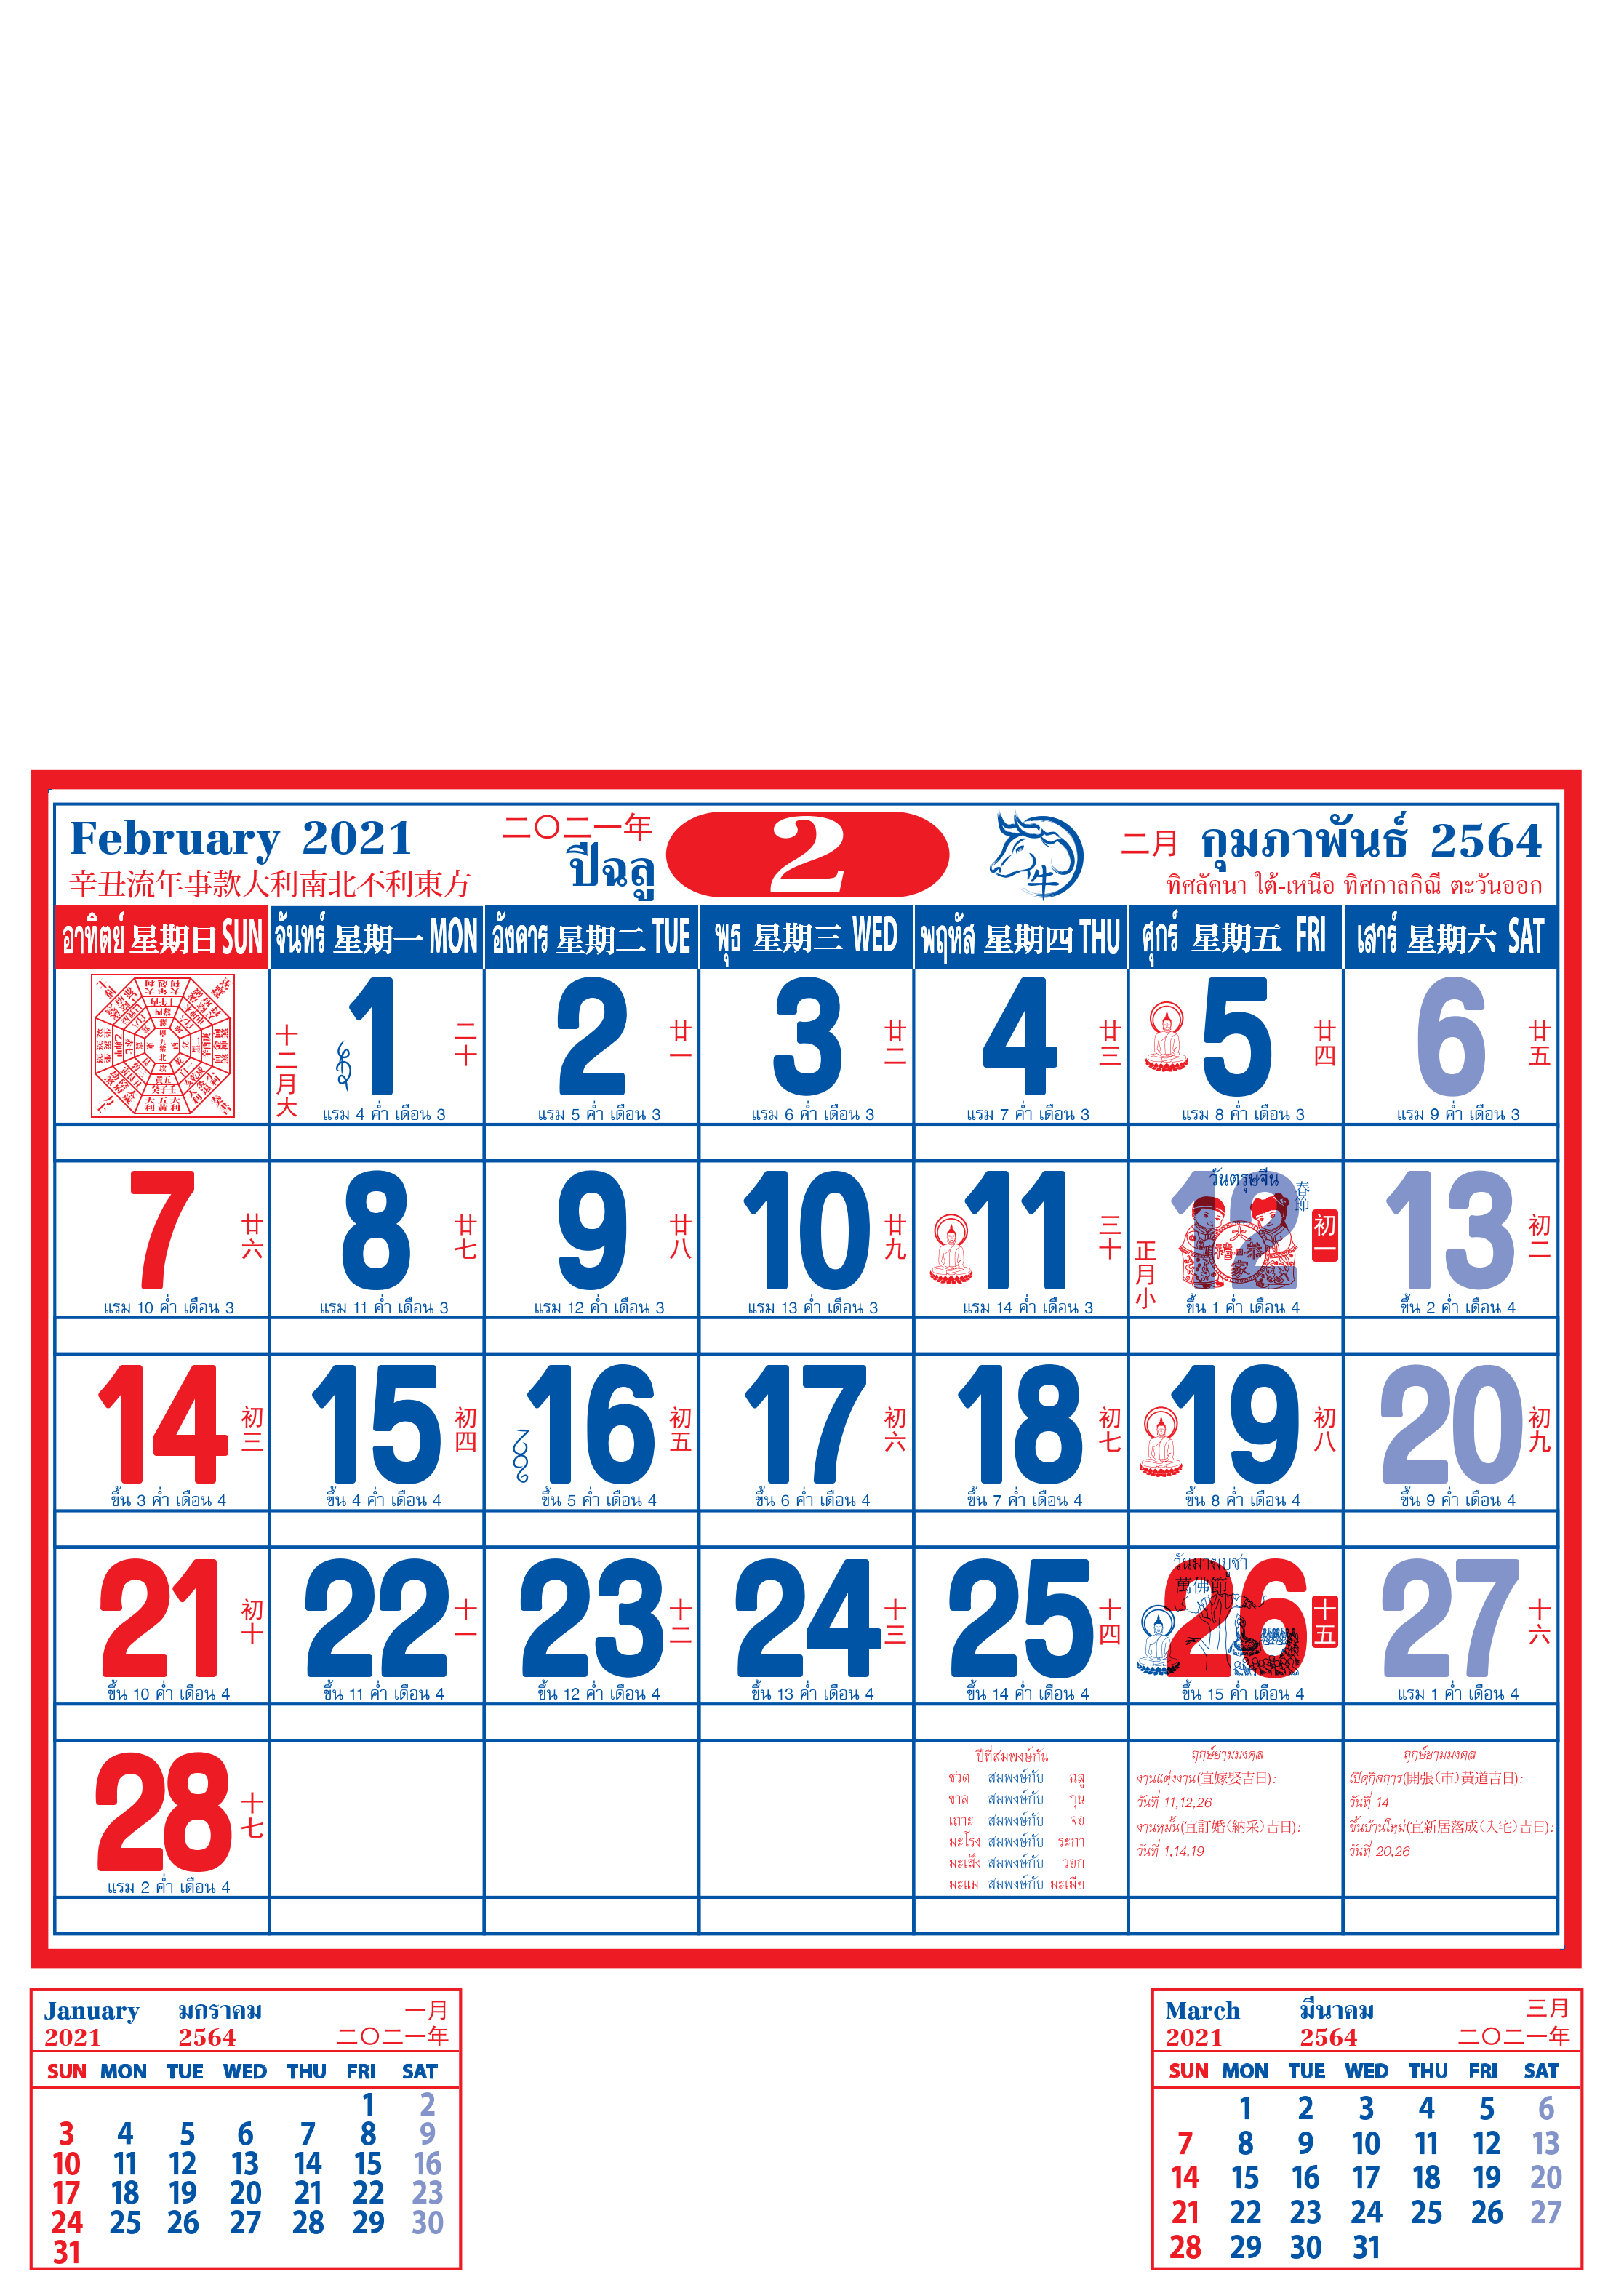 ปฎิทิน แขวนจีน ปี 2564 Calendar 2021 ปฏิทิน แขวนจีน (จีนเยอะ) ปฎิทิน แขวนฉีก ปฎิทิน แขวน ปฎิทิน Ripped wall calendar 2021 จำนวน 2 เล่ม